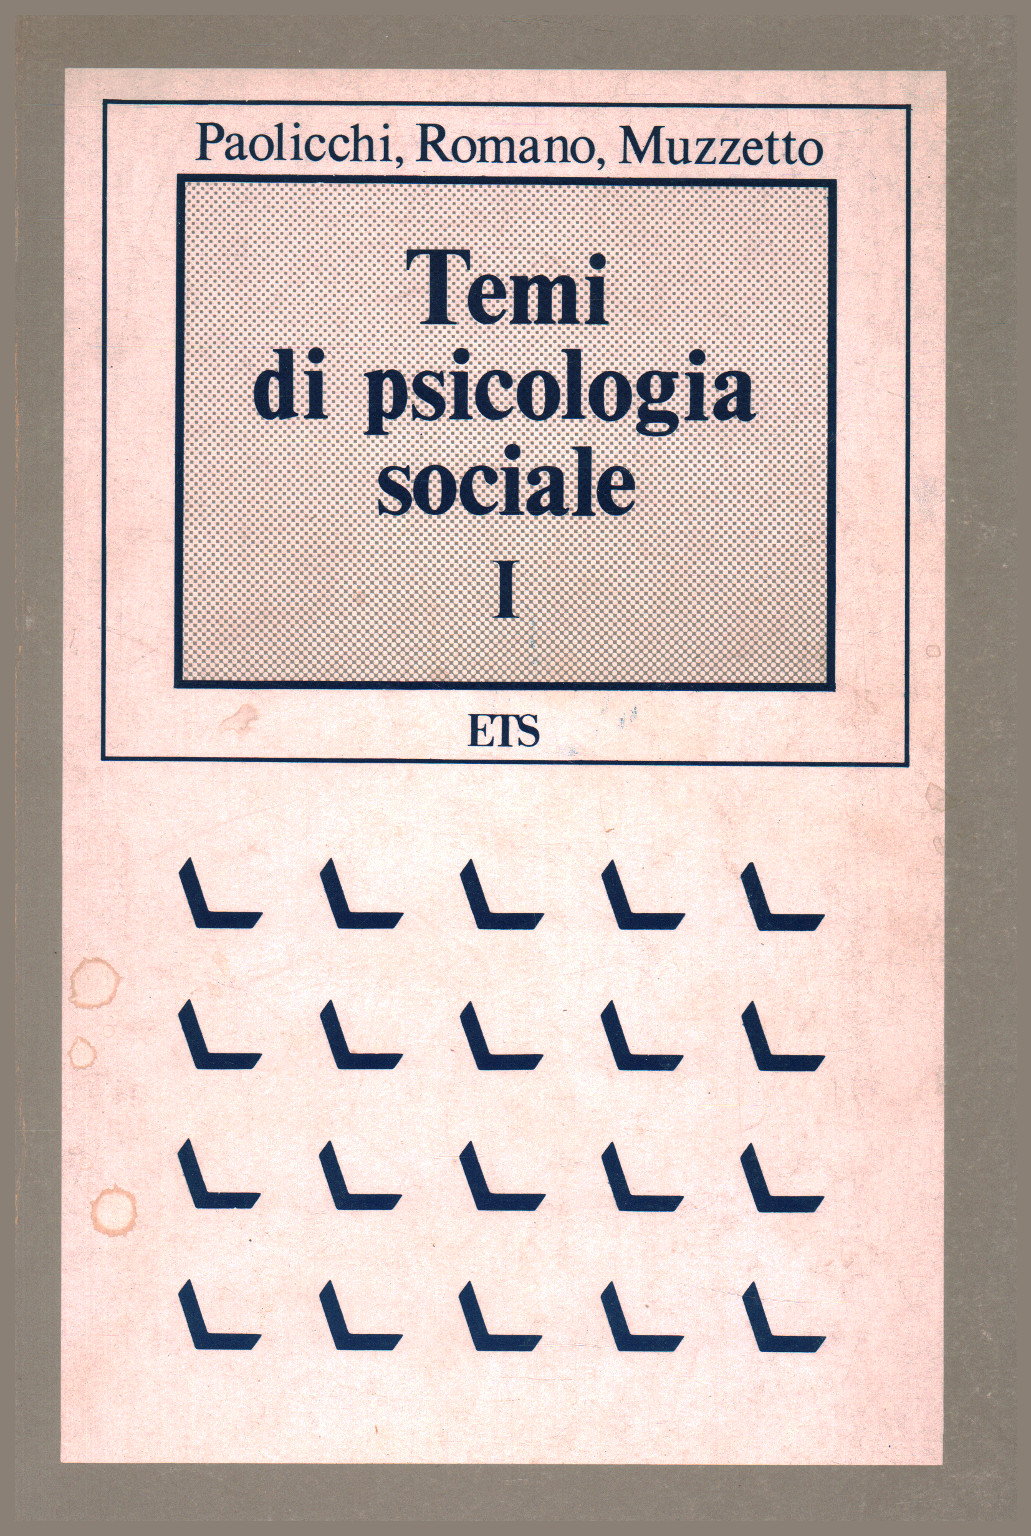 Temi di psicologia sociale I, s.a.